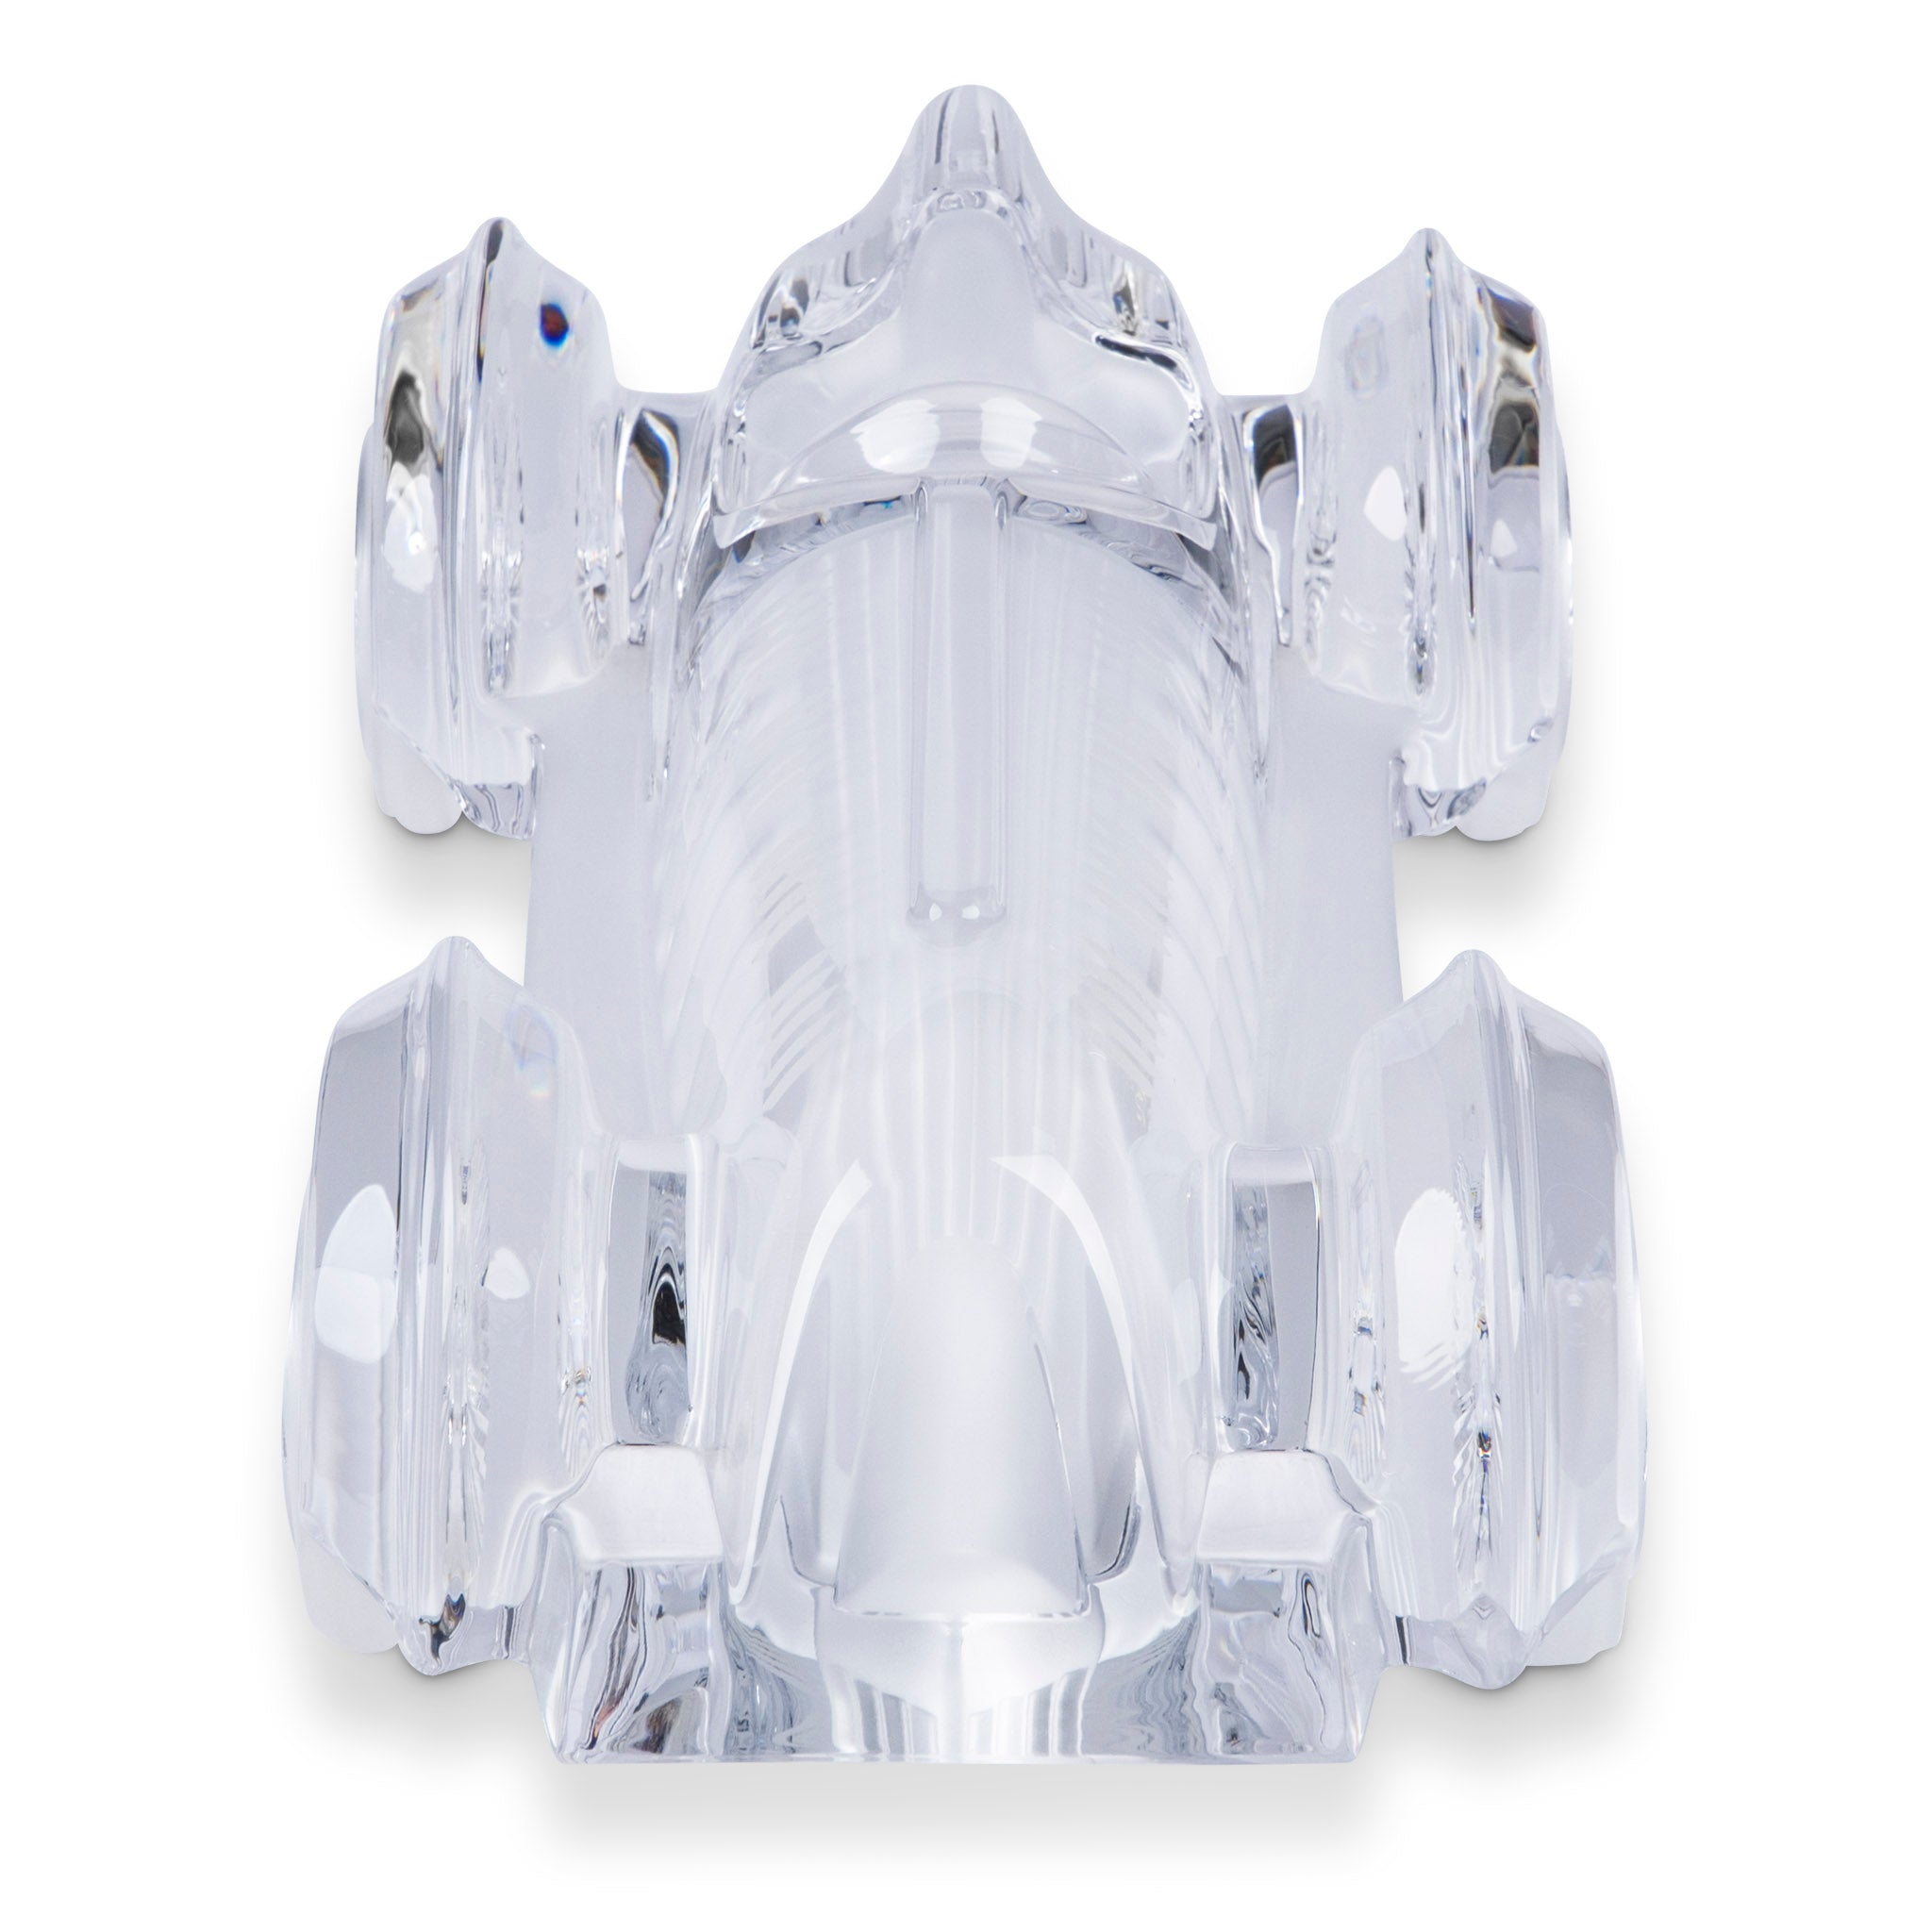 Daum Crystal Monoplace LeMans Car Model